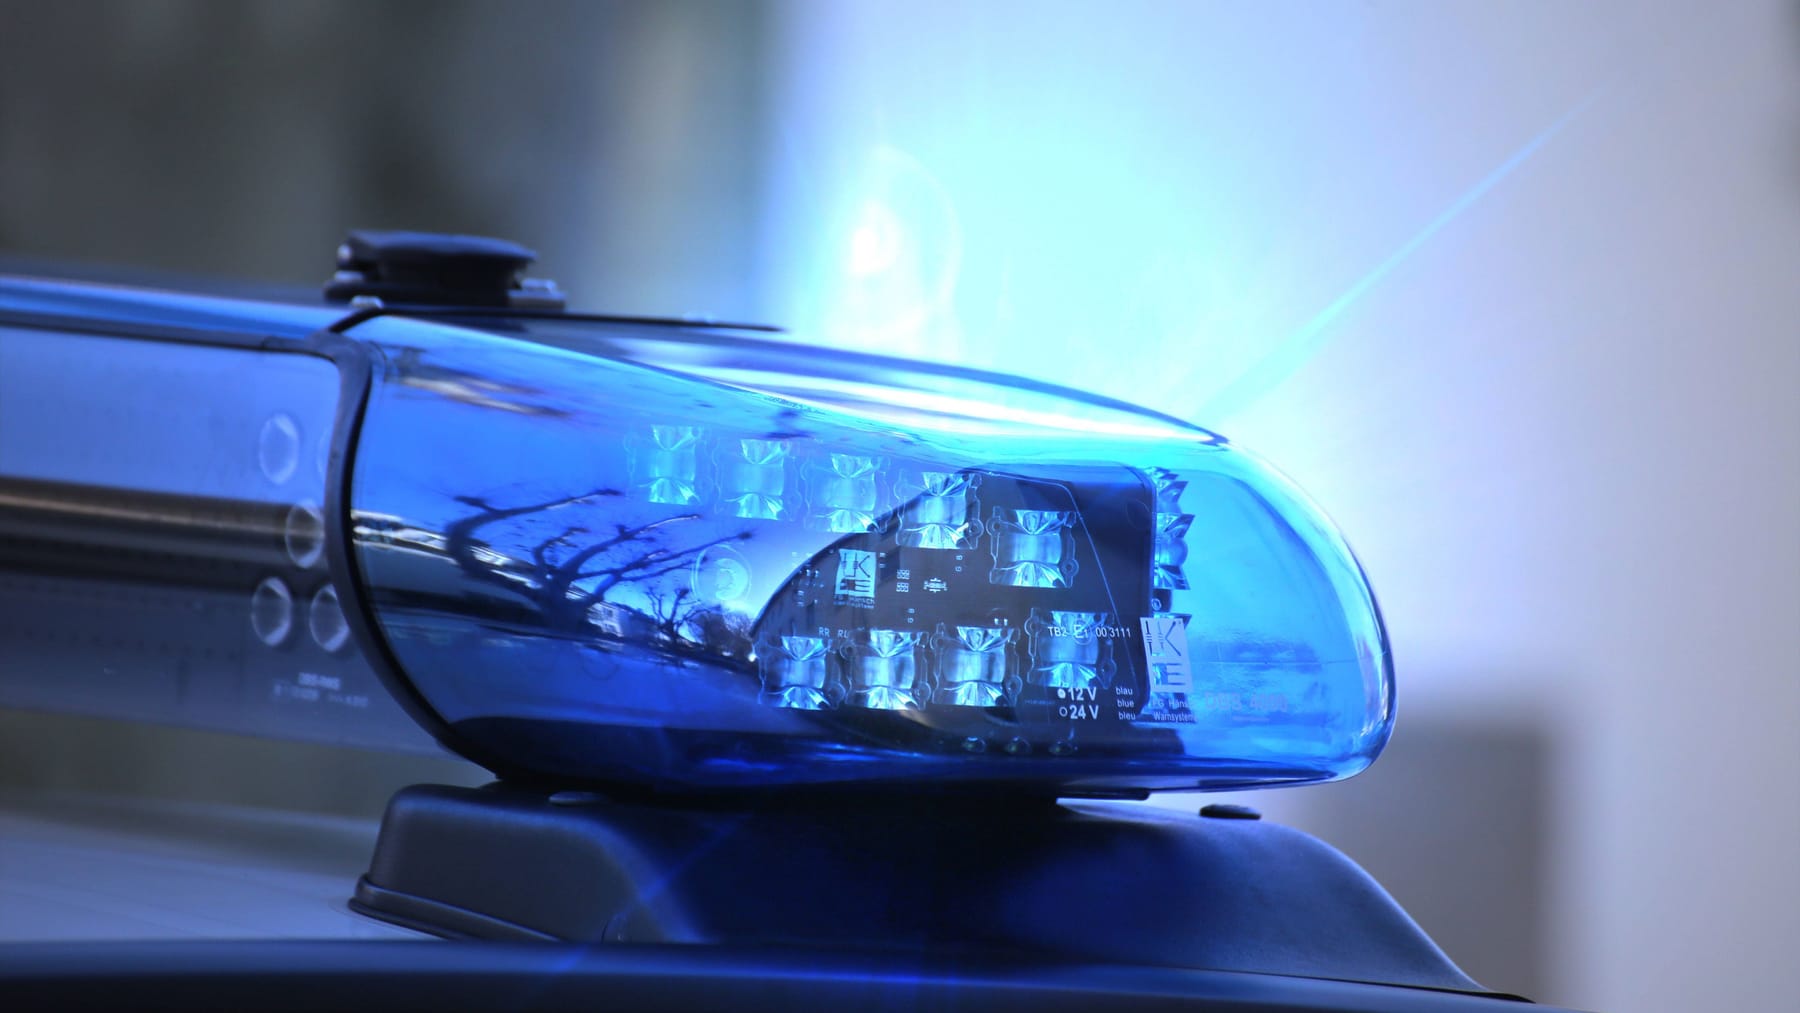 Polizei Freiburg - 🔵 #Polizei-Rätsel: Warum ist das #Blaulicht